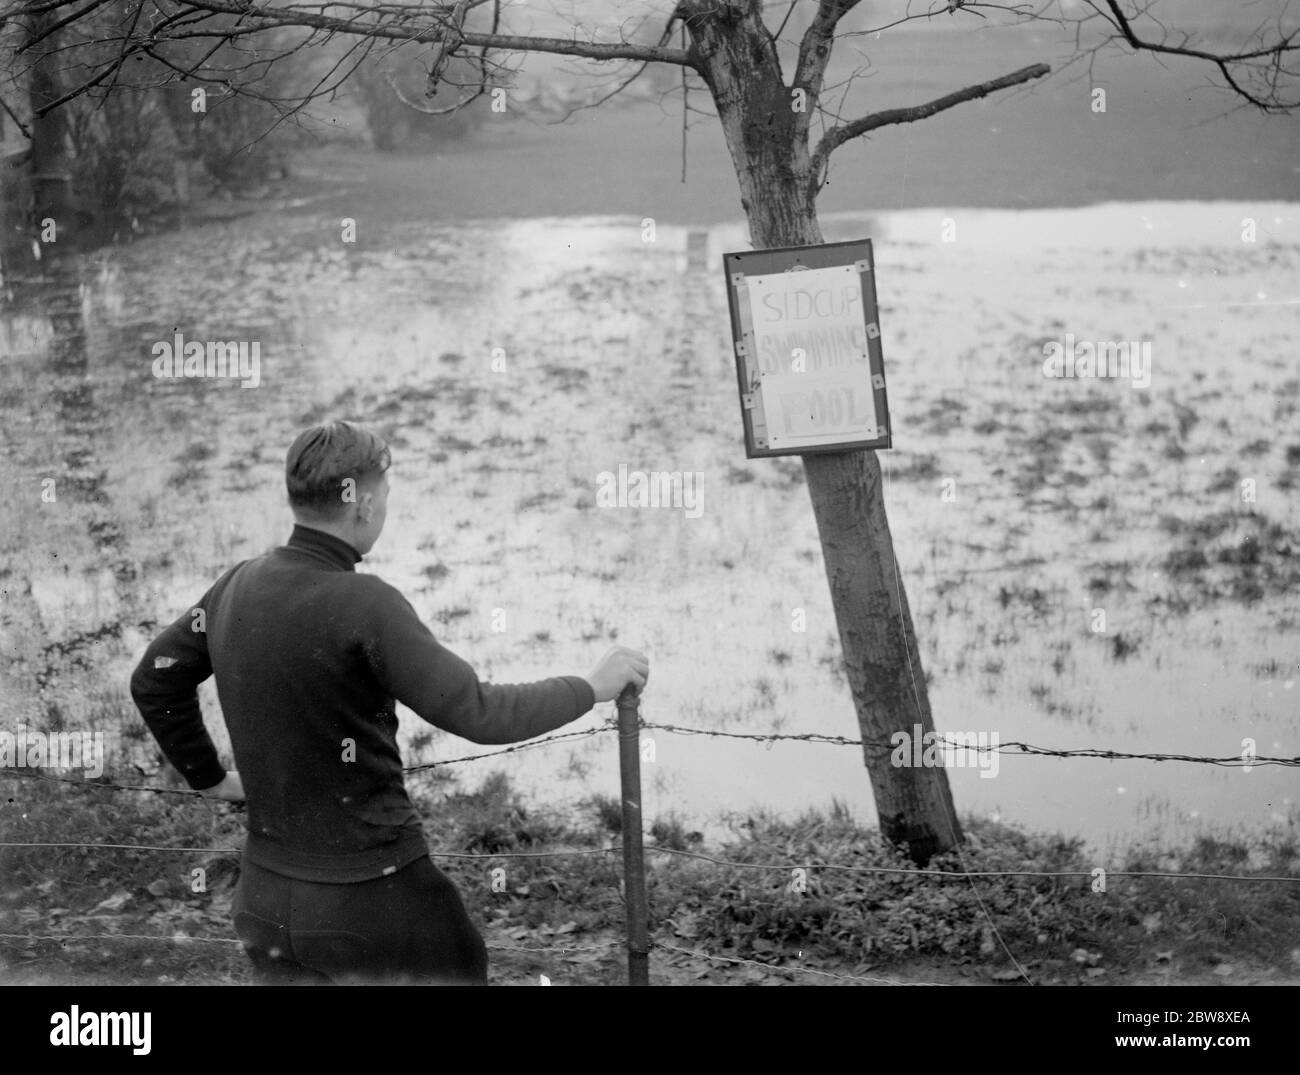 Un garçon regarde la piscine Sidcup inondée - inondée en raison du mauvais temps. 1936 Banque D'Images